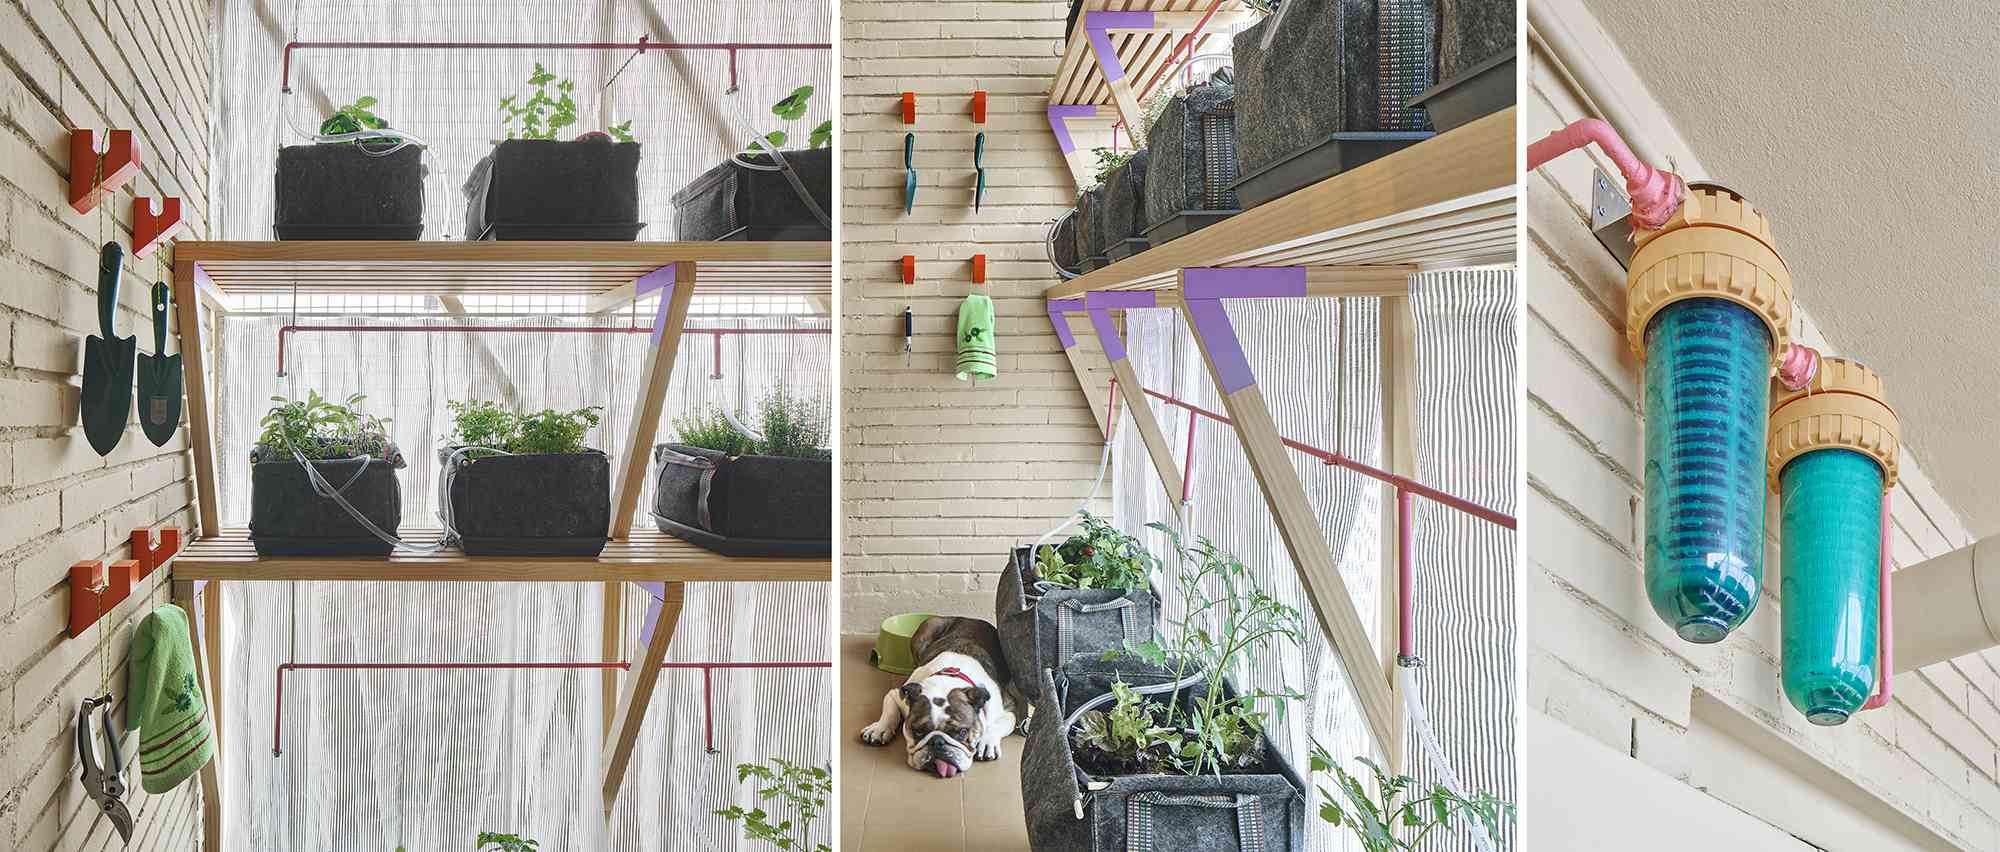 小型公寓改造马德里Husos建筑事务所的垂直花园